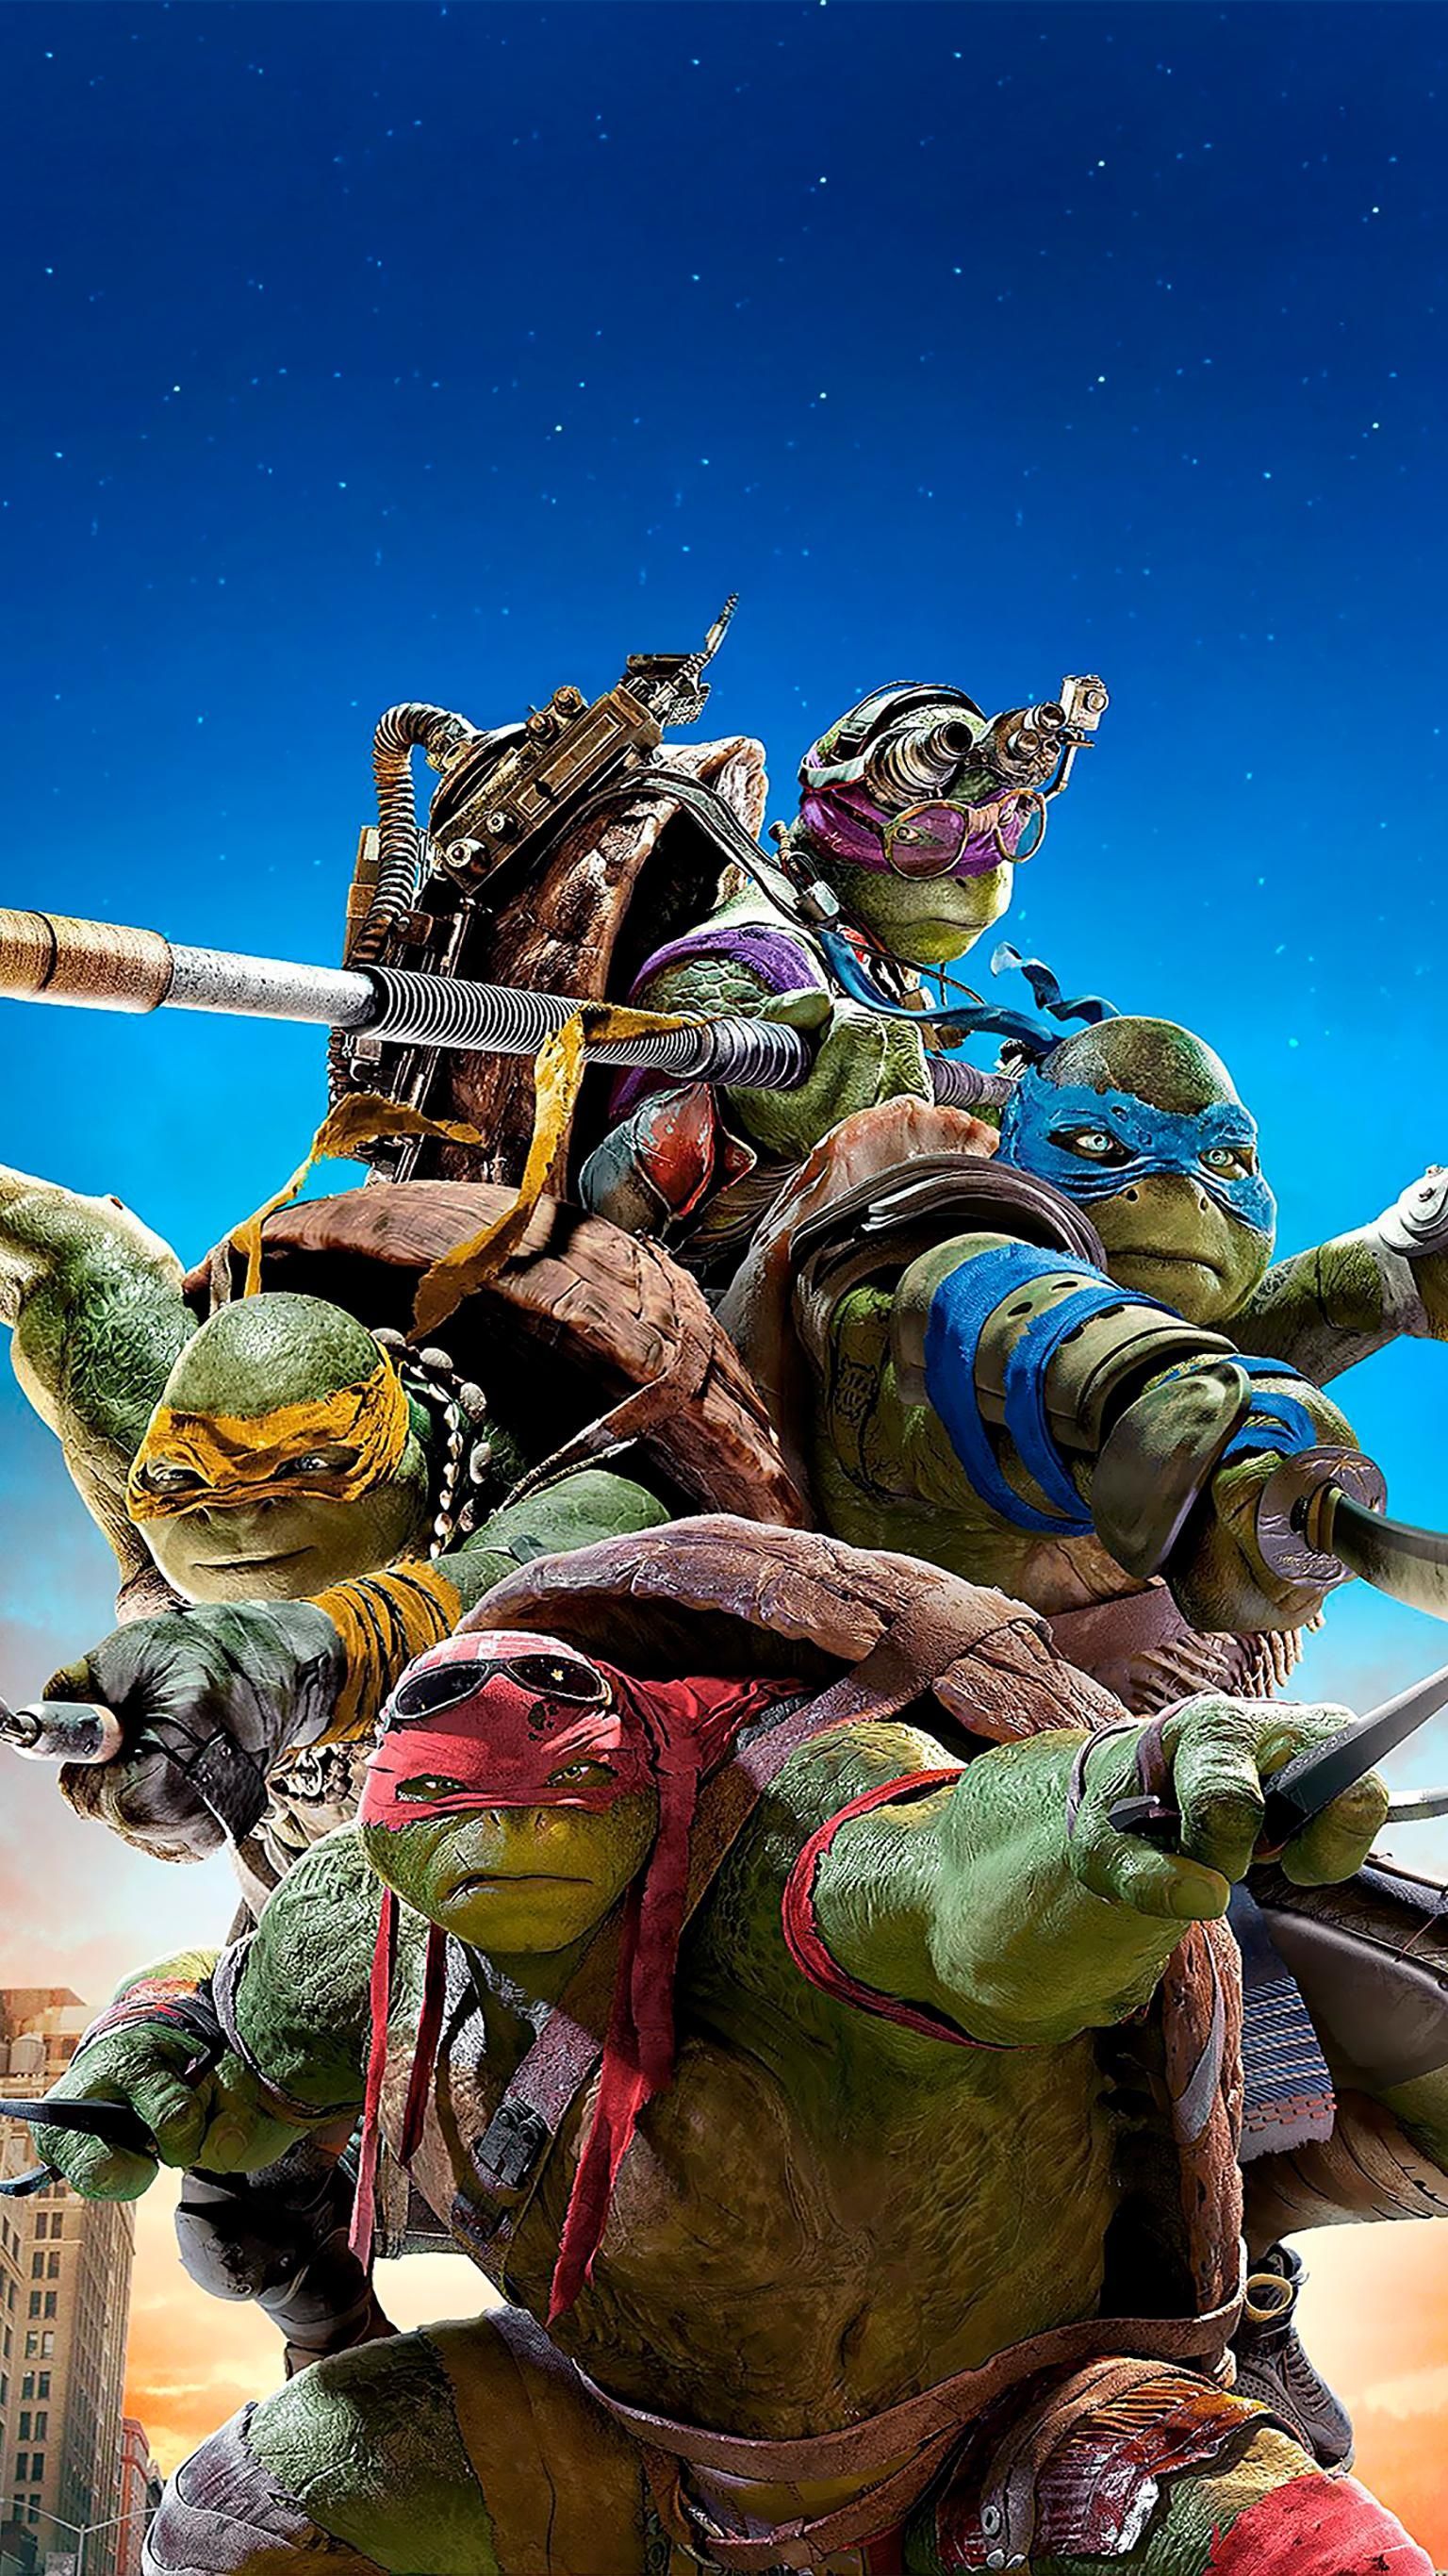 Teenage Mutant Ninja Turtles (2014) Phone Wallpaper. Moviemania. Teenage mutant ninja turtles artwork, Ninja turtles, Teenage mutant ninja turtles movie